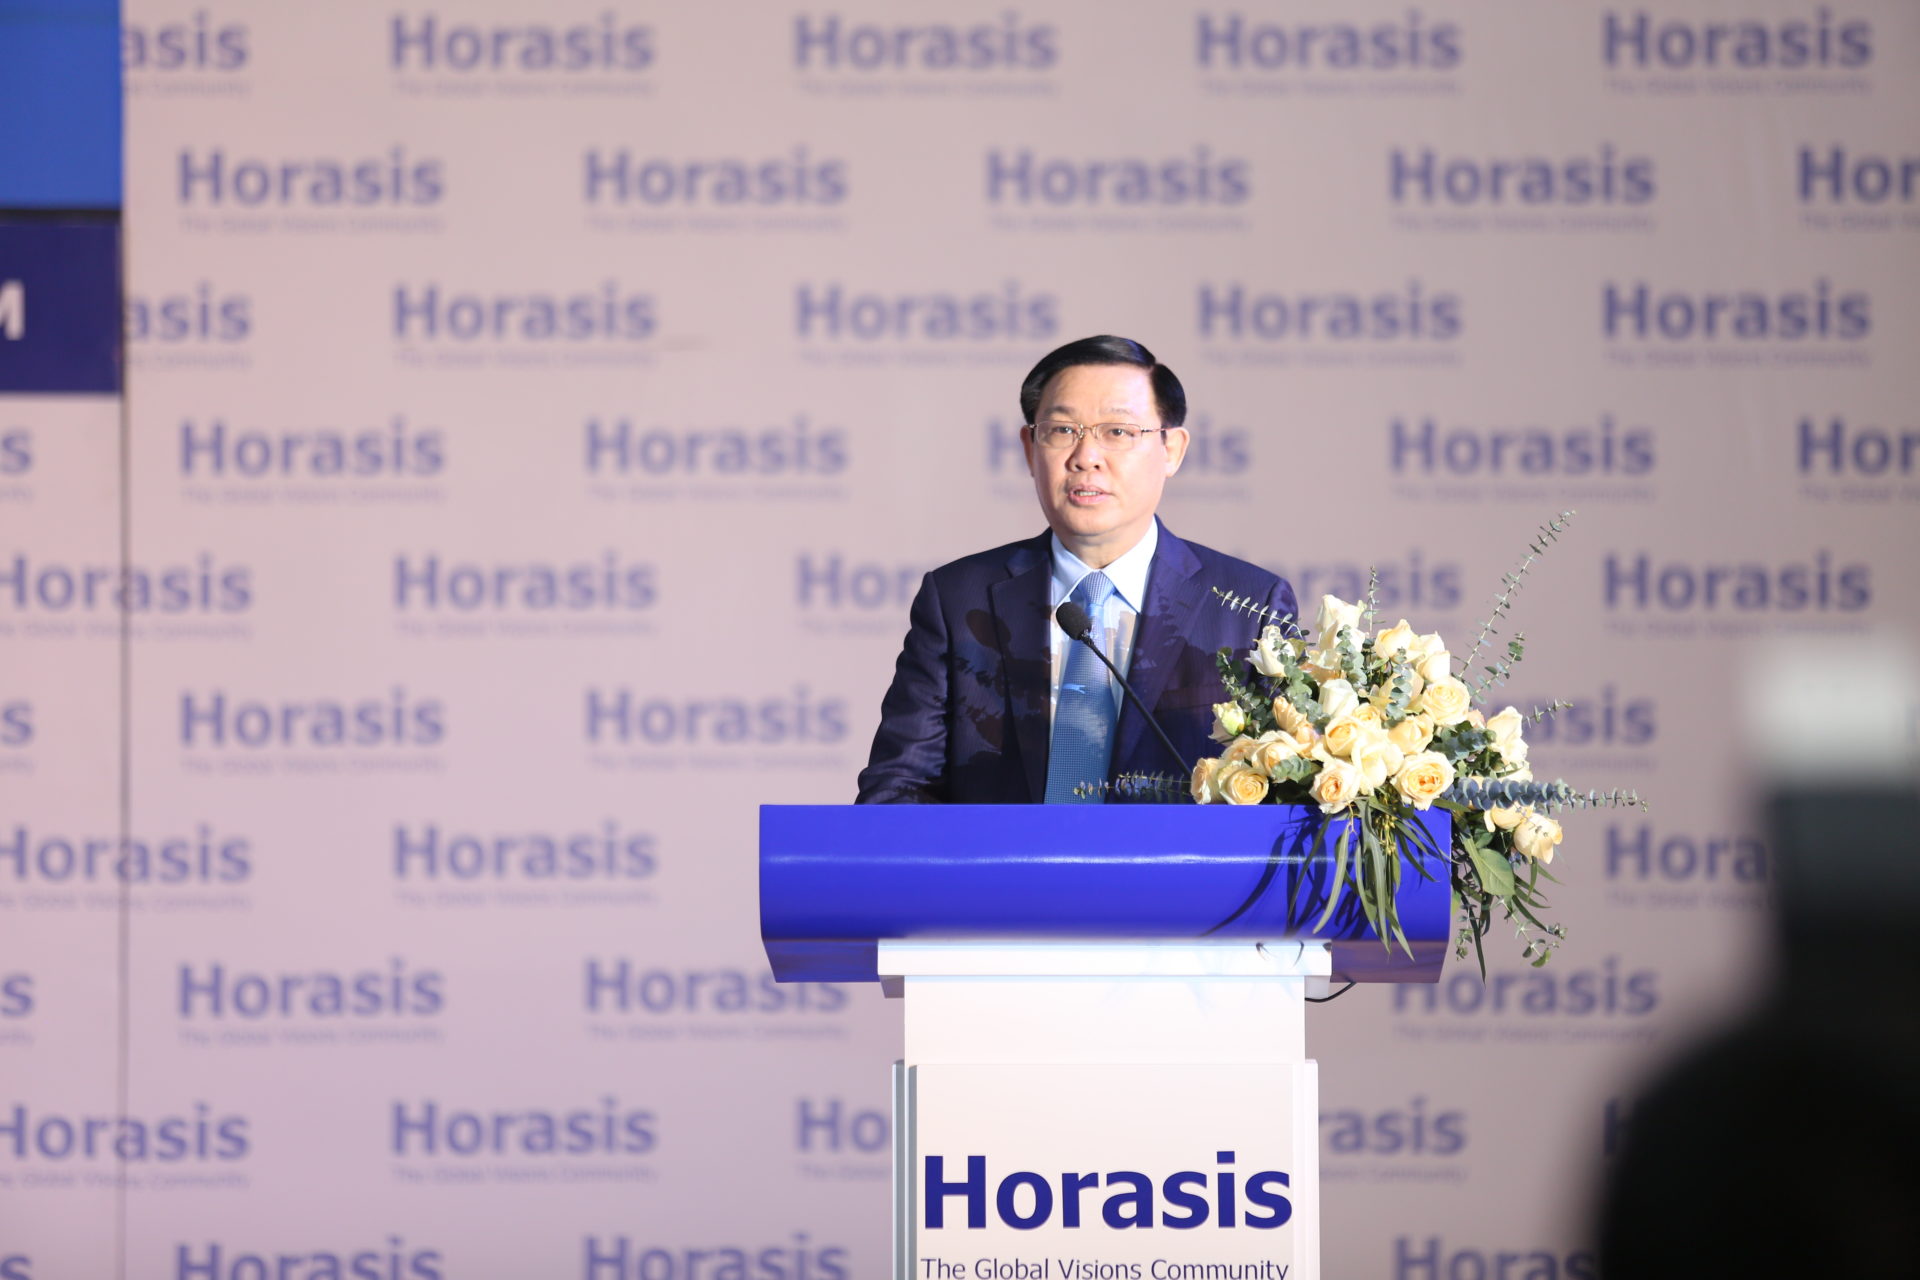 https://horasis.org/wp-content/uploads/Vuong-Dinh-Hue-Deputy-Prime-Minister-of-Vietnam-Vietnam.jpg